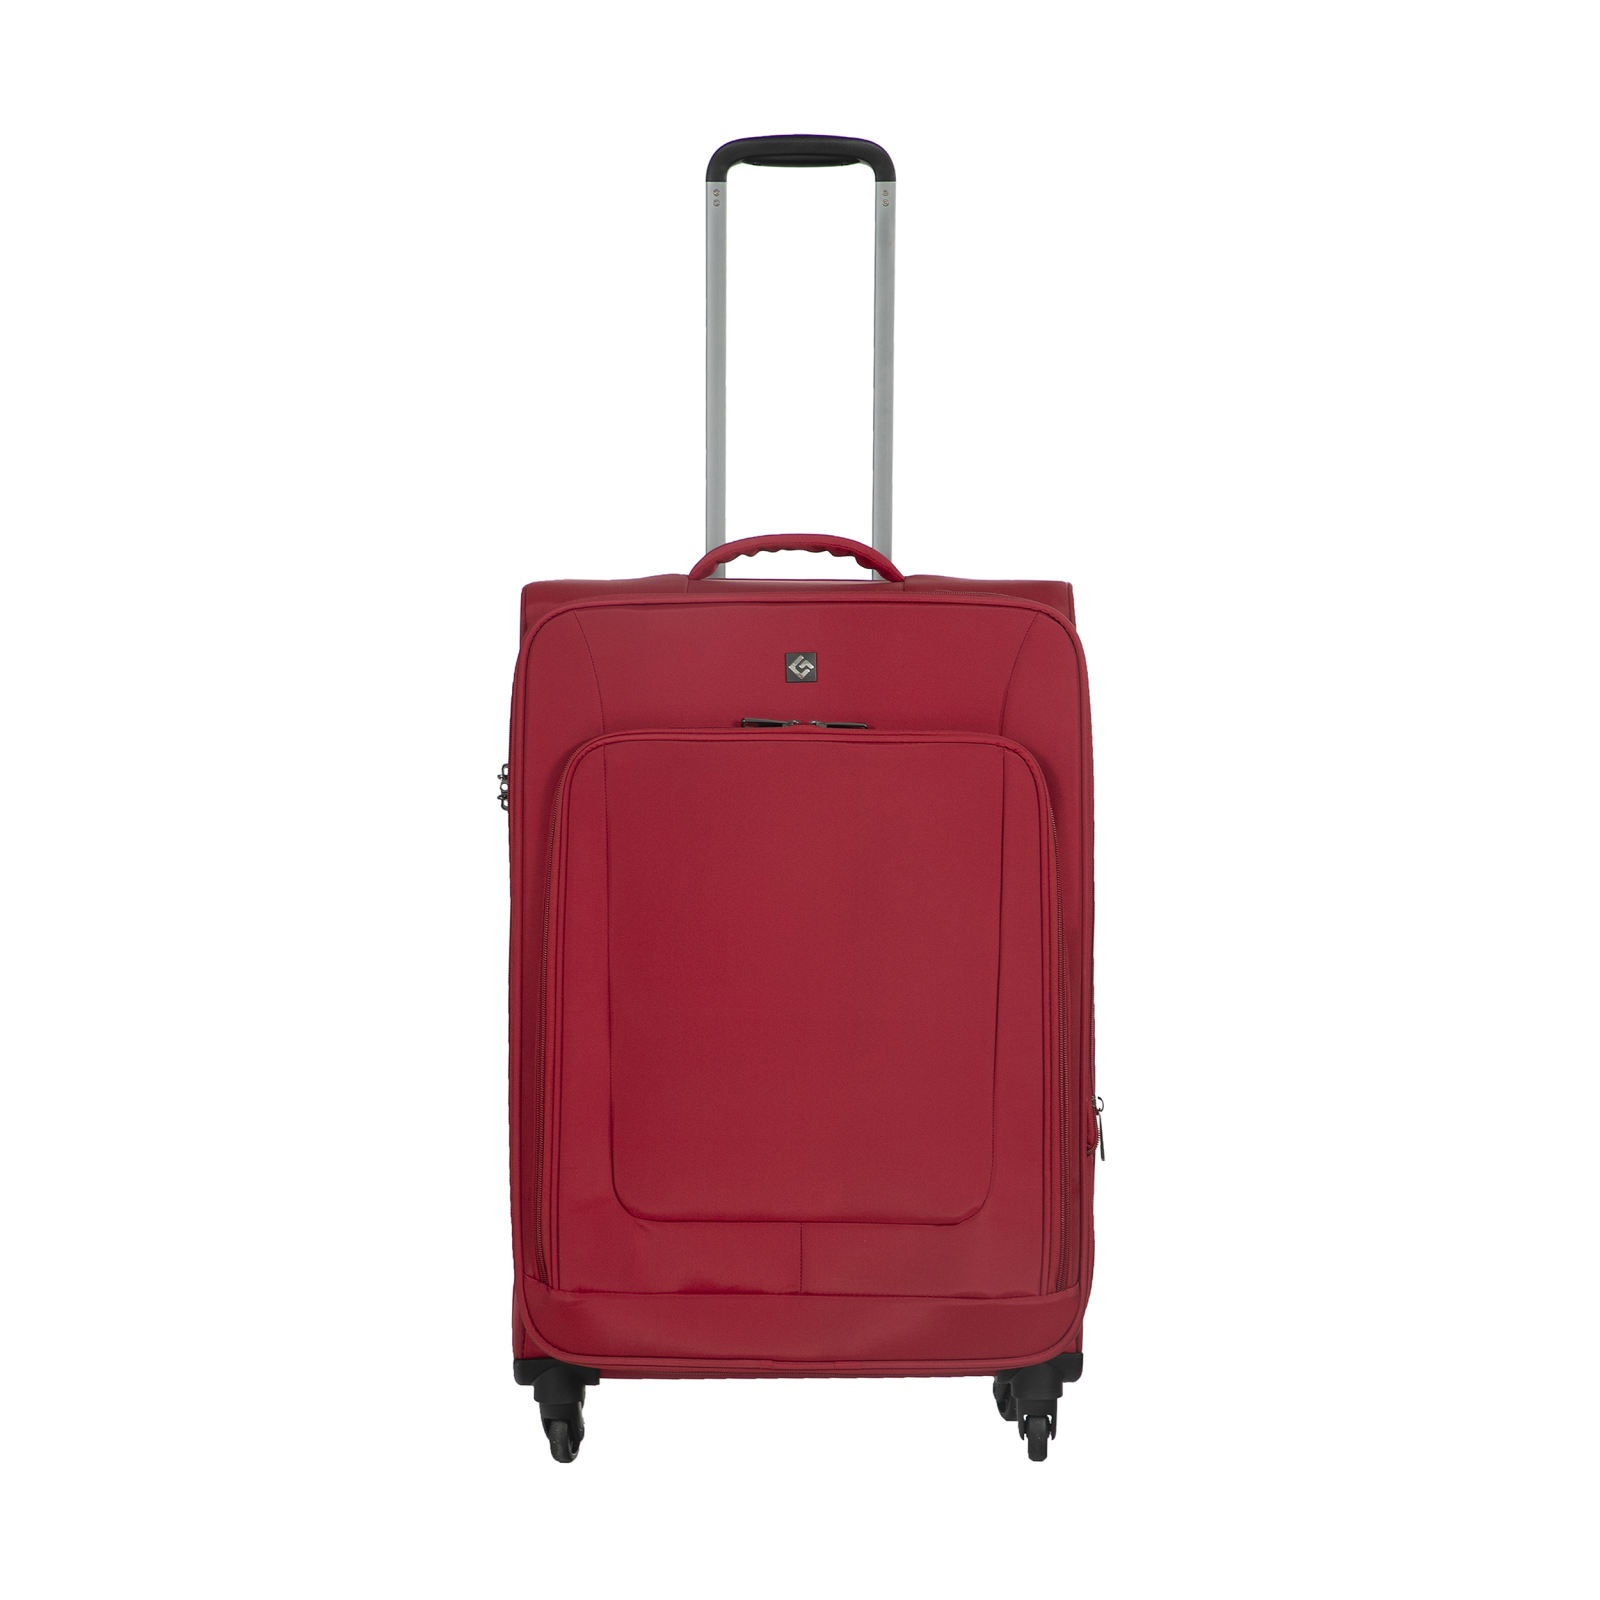  چمدان جنوا مدل G2425-3-20 سایز کوچک